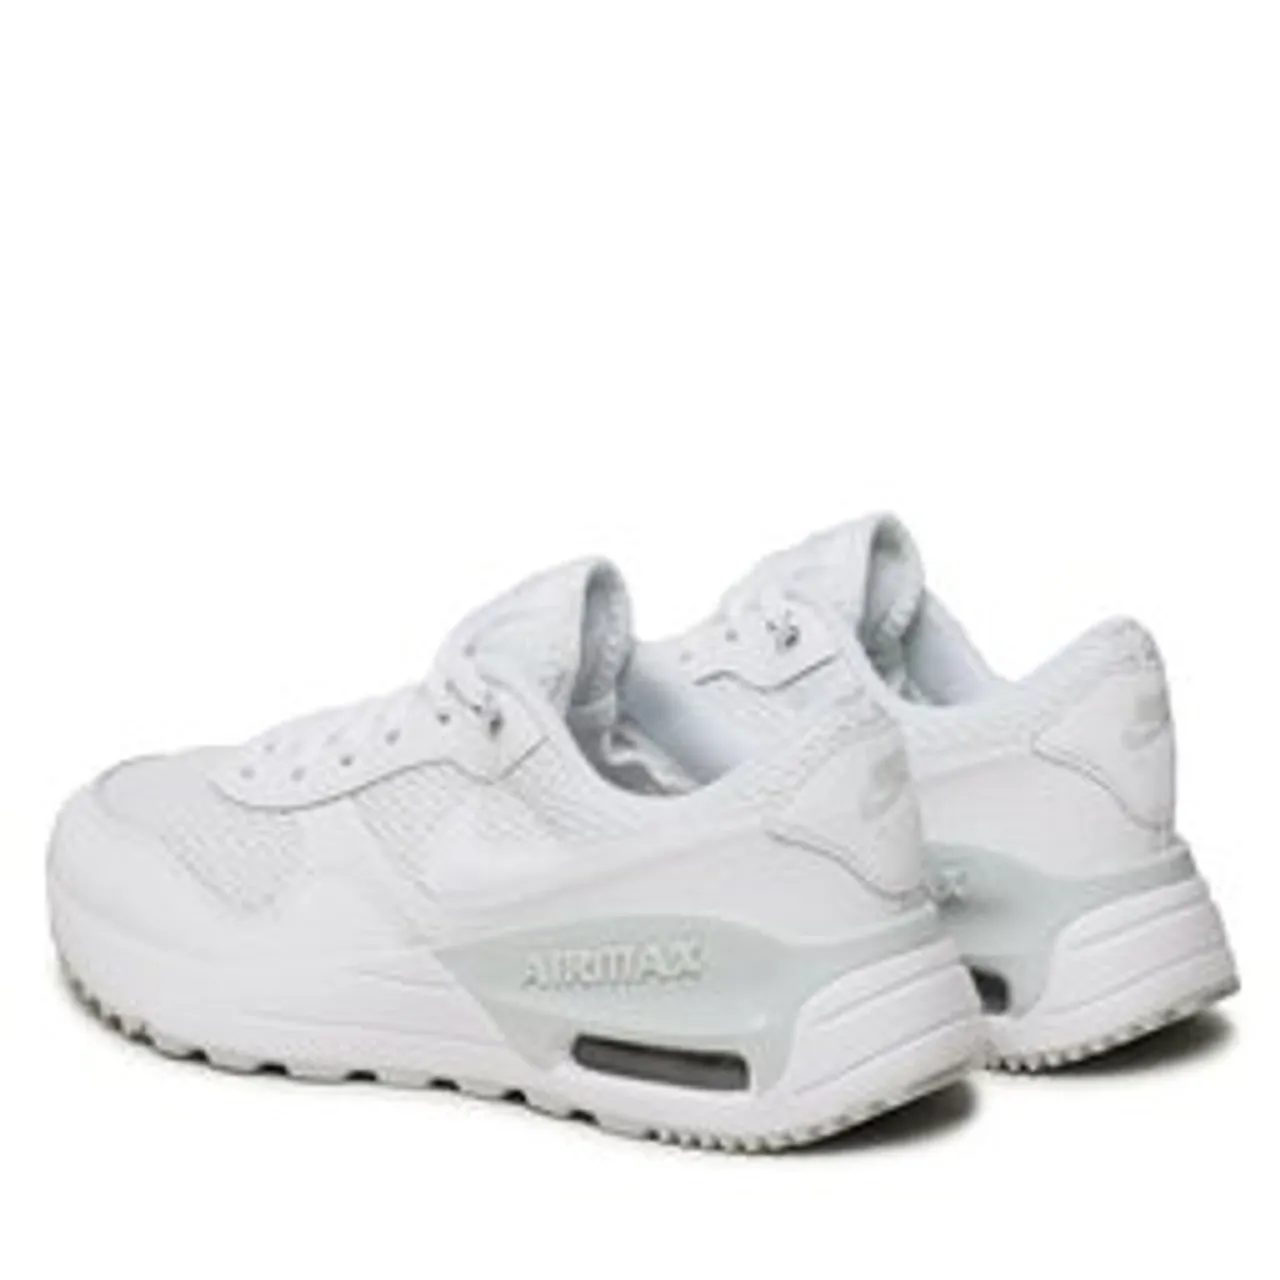 Schuhe Nike Air Max Systm (GS) DQ0284 102 White/White/Pure Platinum